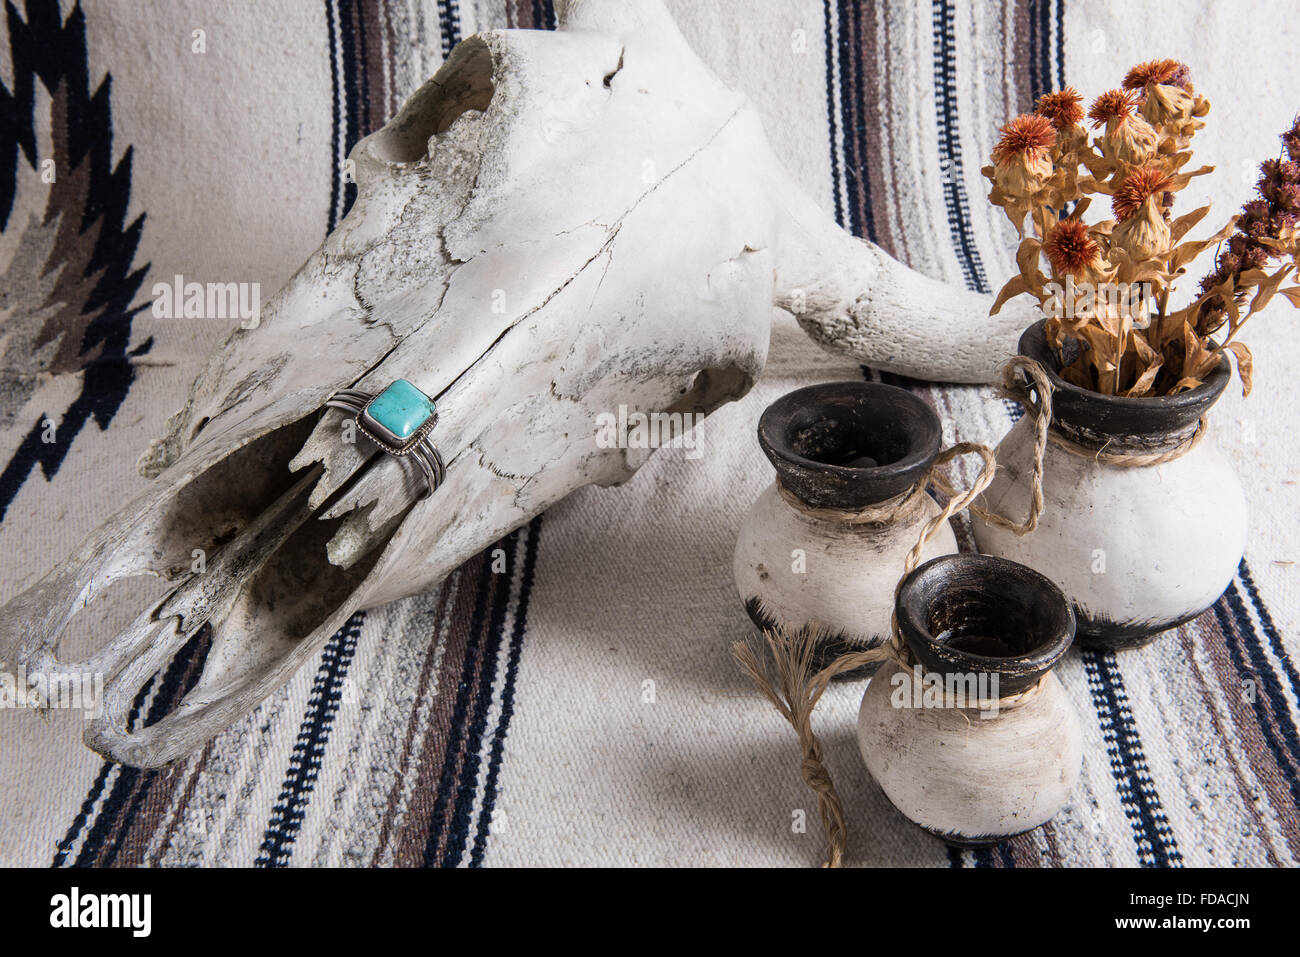 Verwitterter Kuhschädel, türkisfarbenes und silbernes Manschettenarmband, schwarz-weiß bemalte mexikanische Keramik mit getrockneten Blumen auf einer mexikanischen gestreiften Decke. Stockfoto